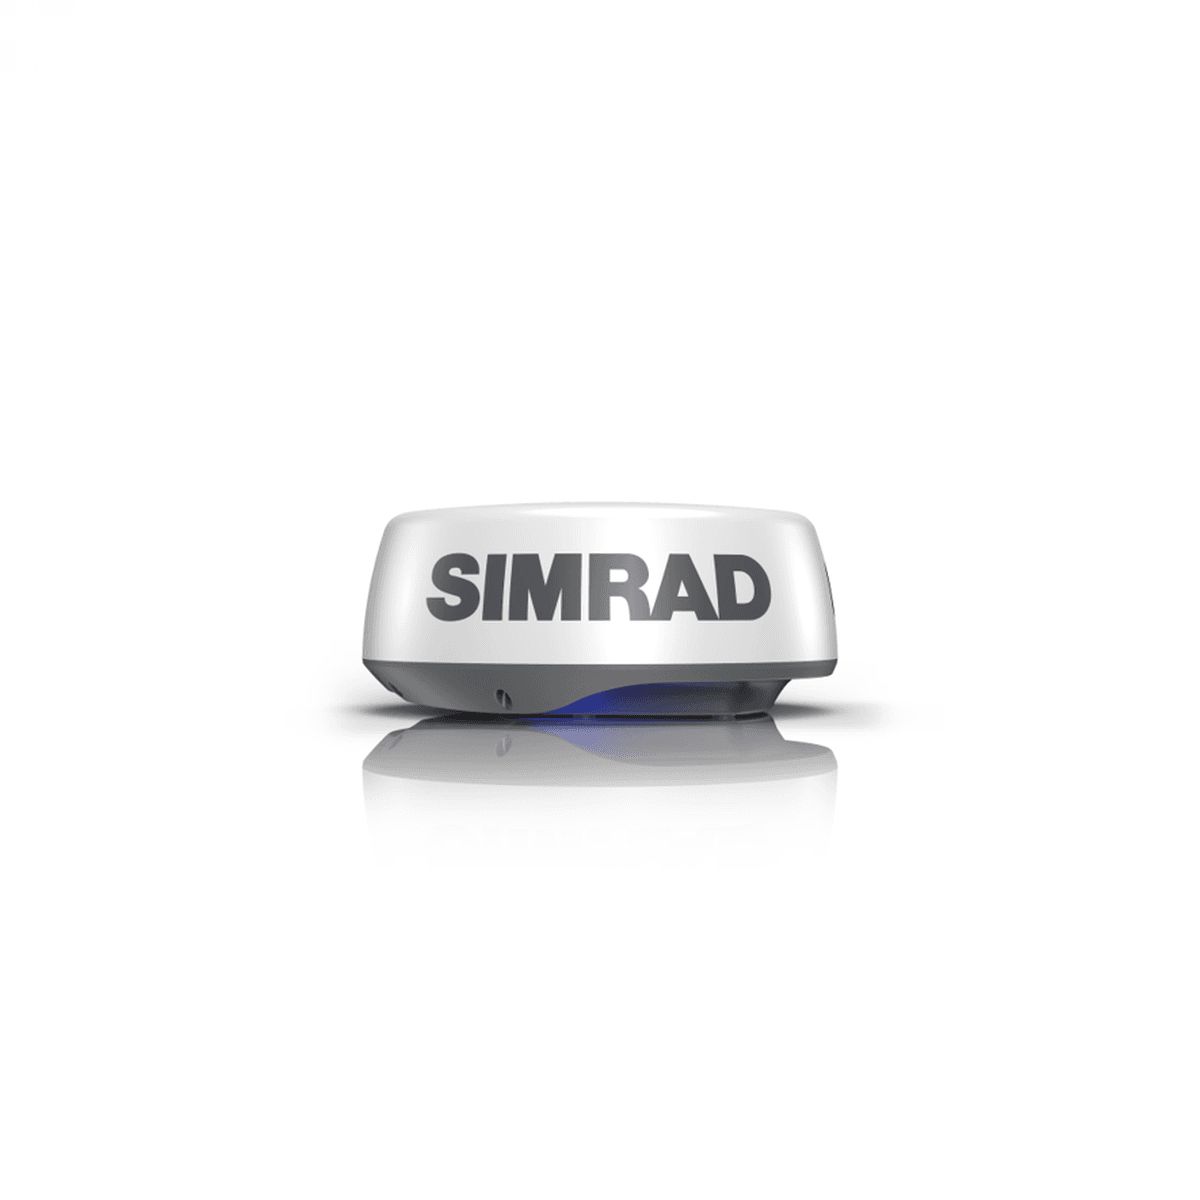 Simrad HALO 20+ radar